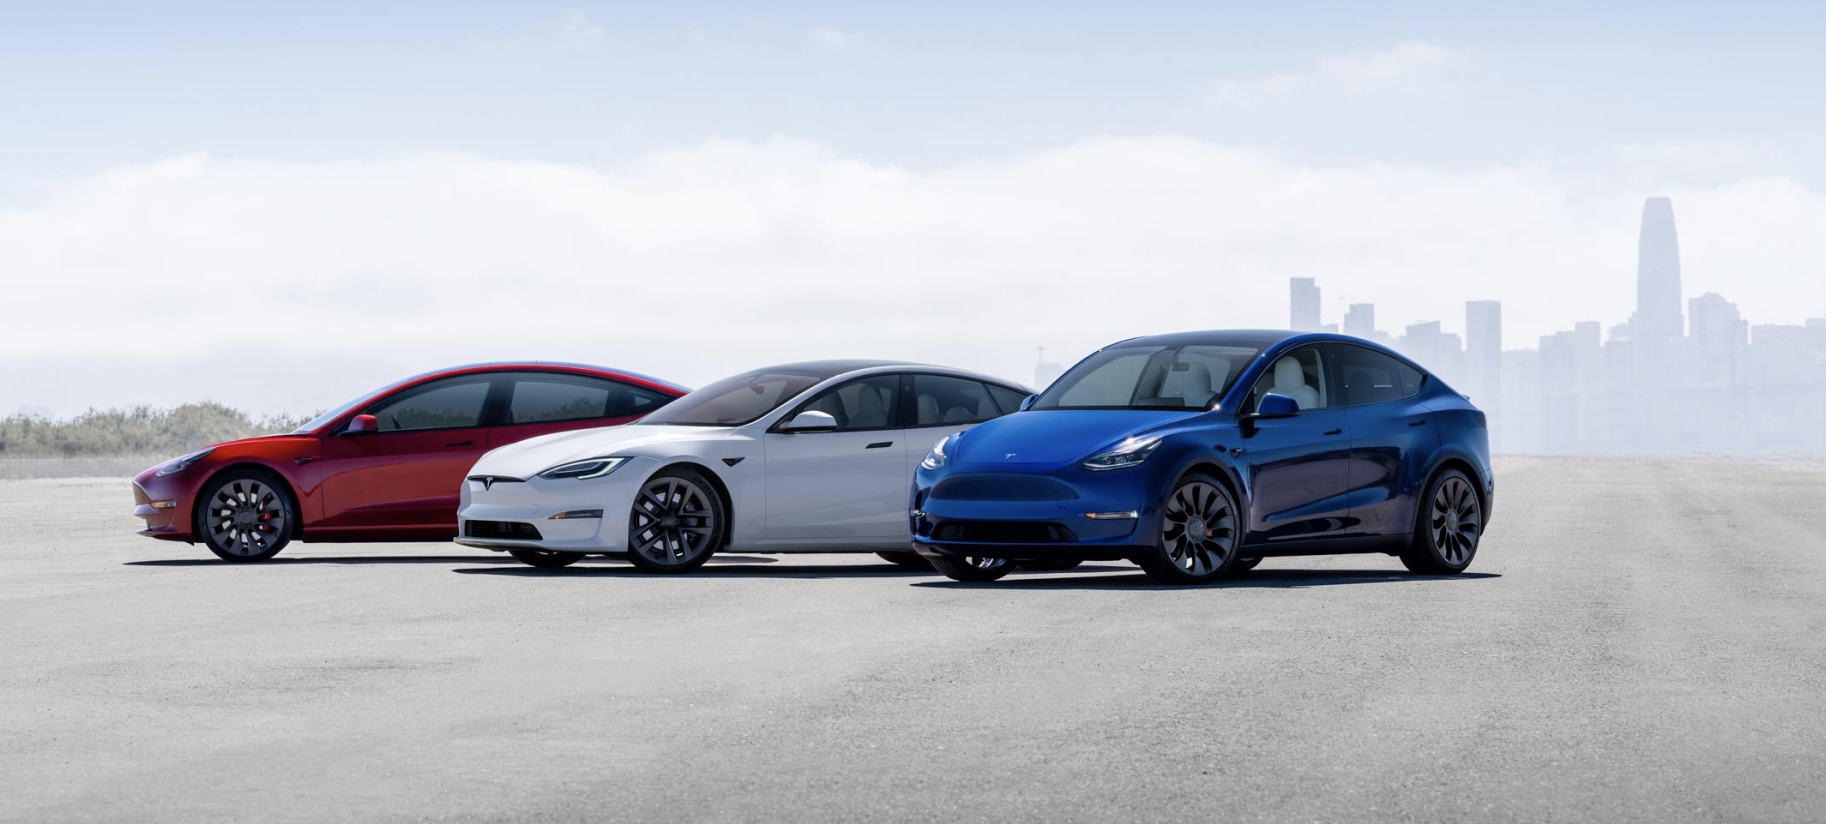 Los conductores de Tesla tendrán una vista remota alrededor del vehículo